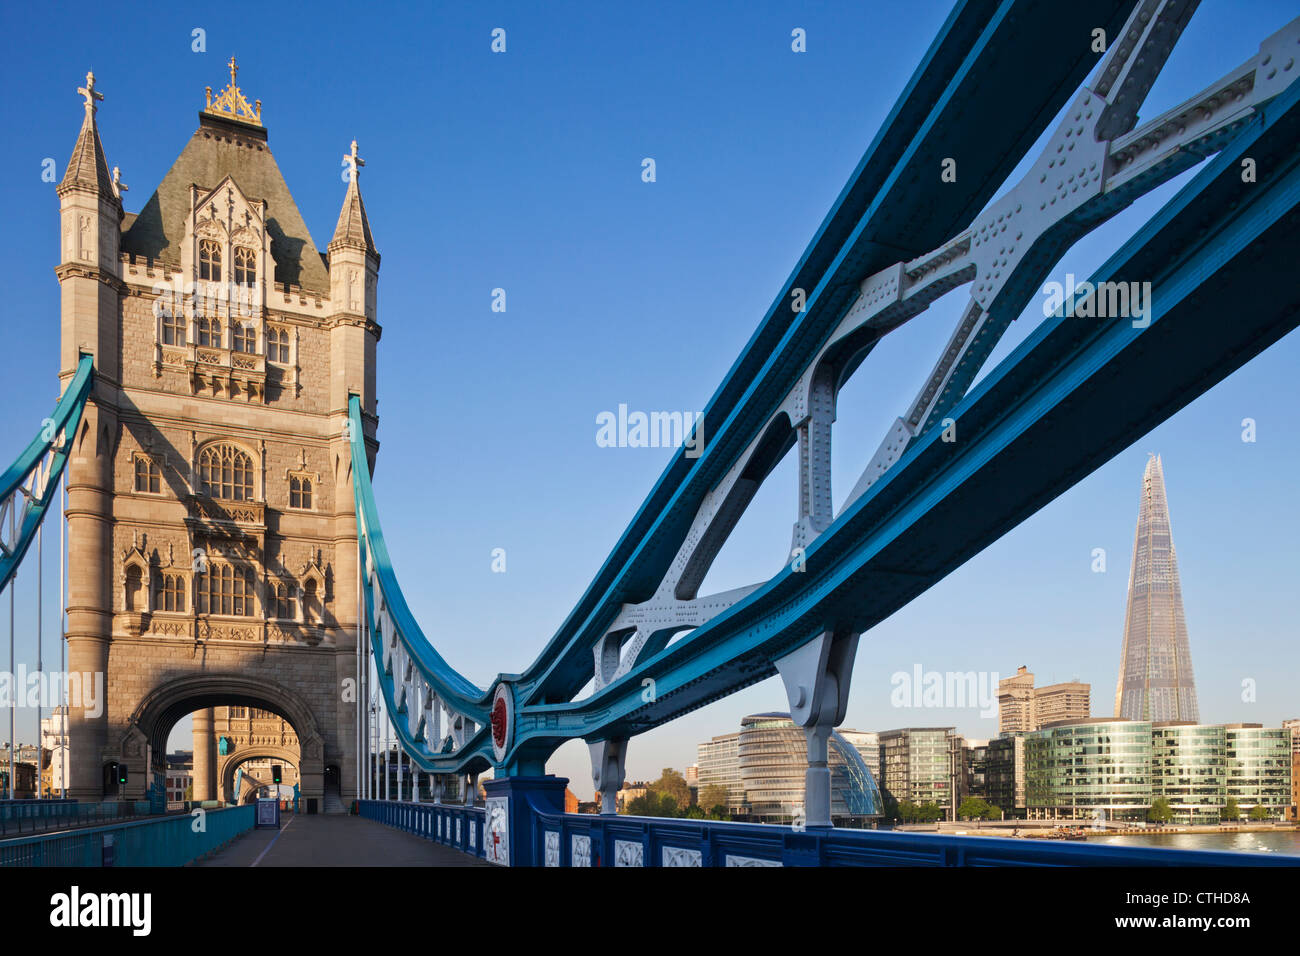 Inglaterra, Londres, Southwark, el Tower Bridge y el Shard Foto de stock